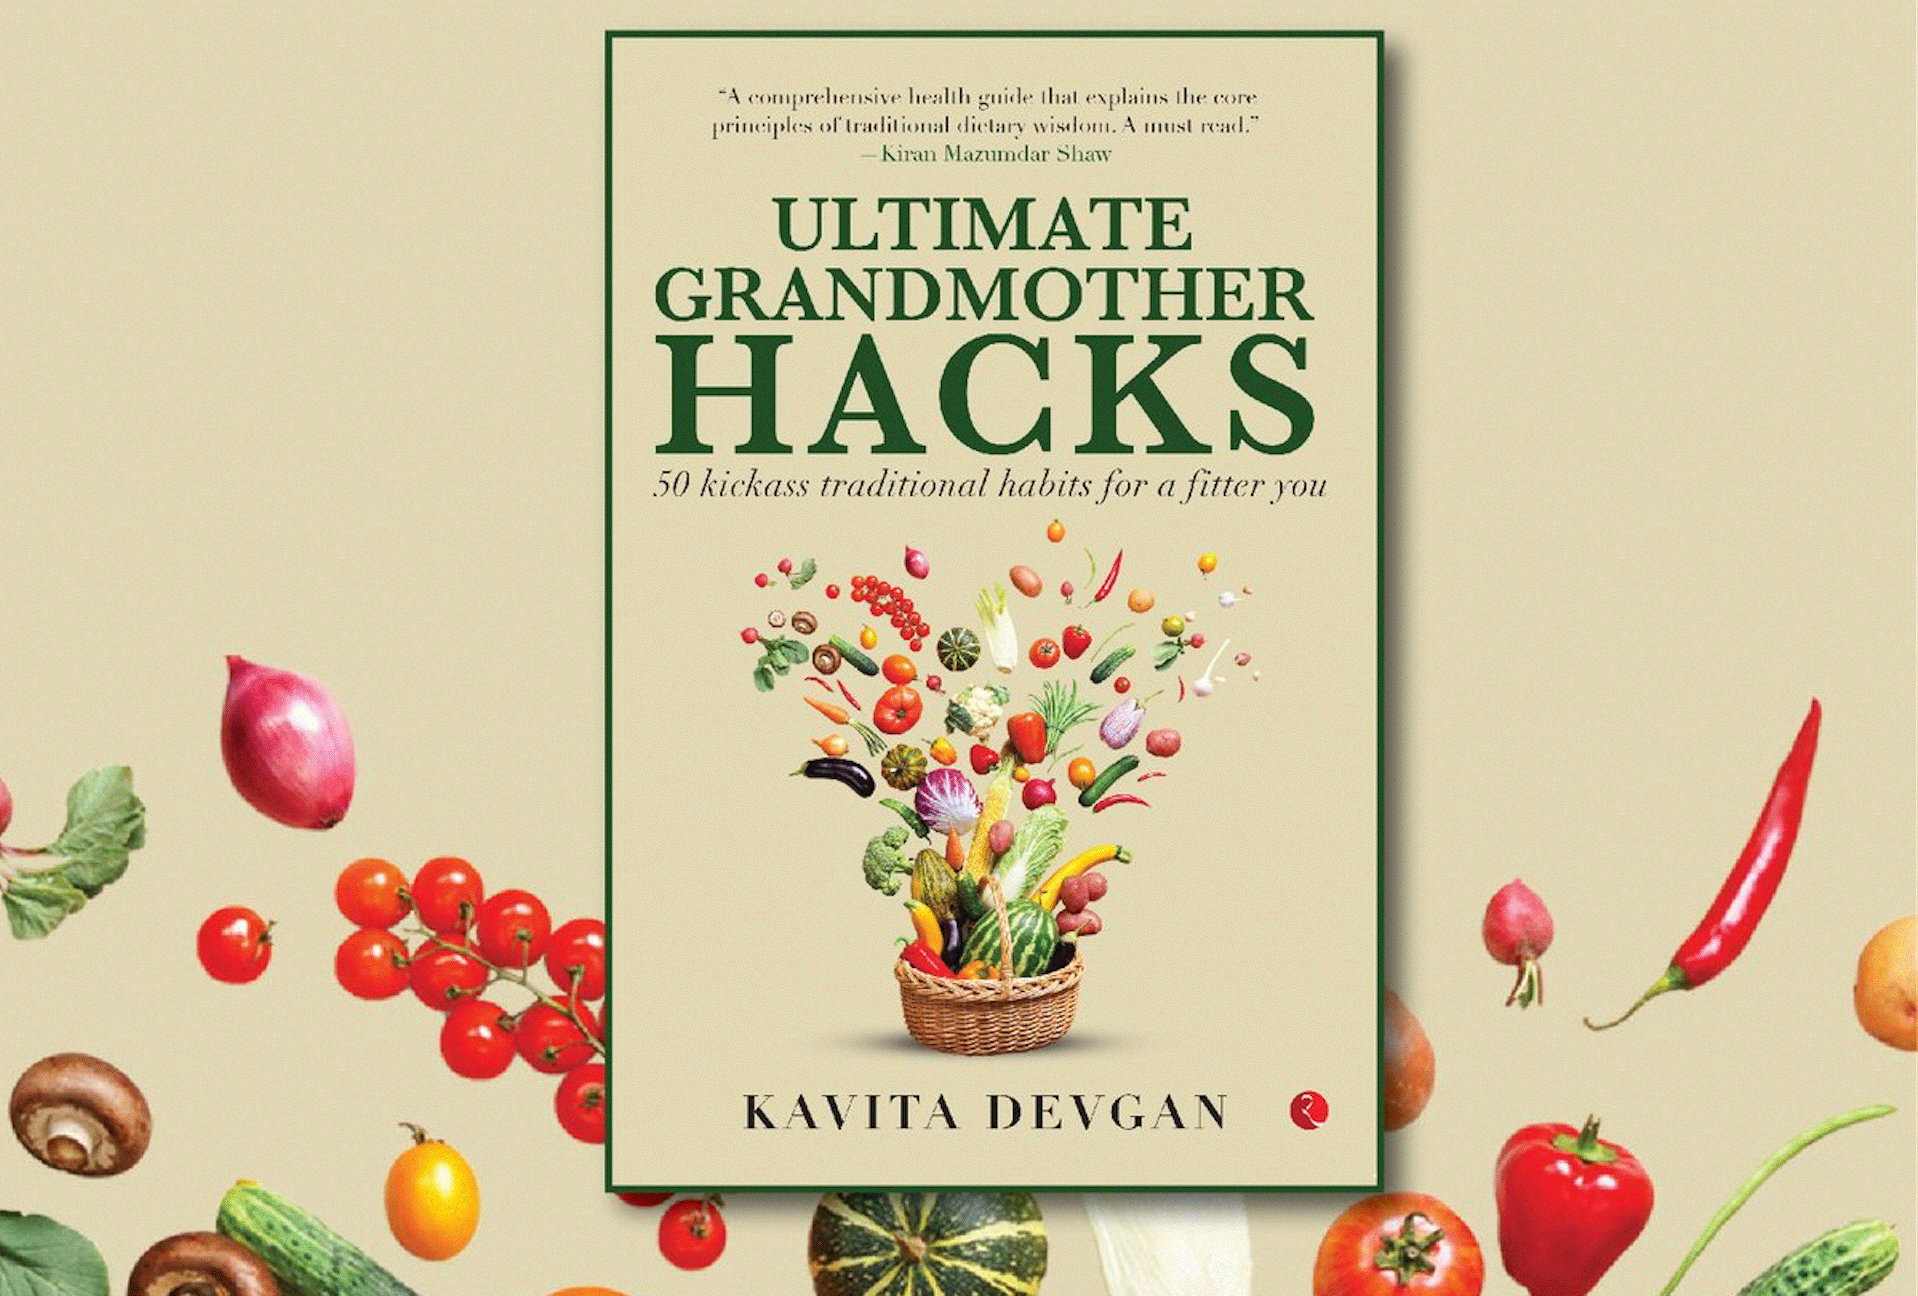 Kavita Devgans Ultimate Grandmother Hacks revisits नानी के नुस्खे